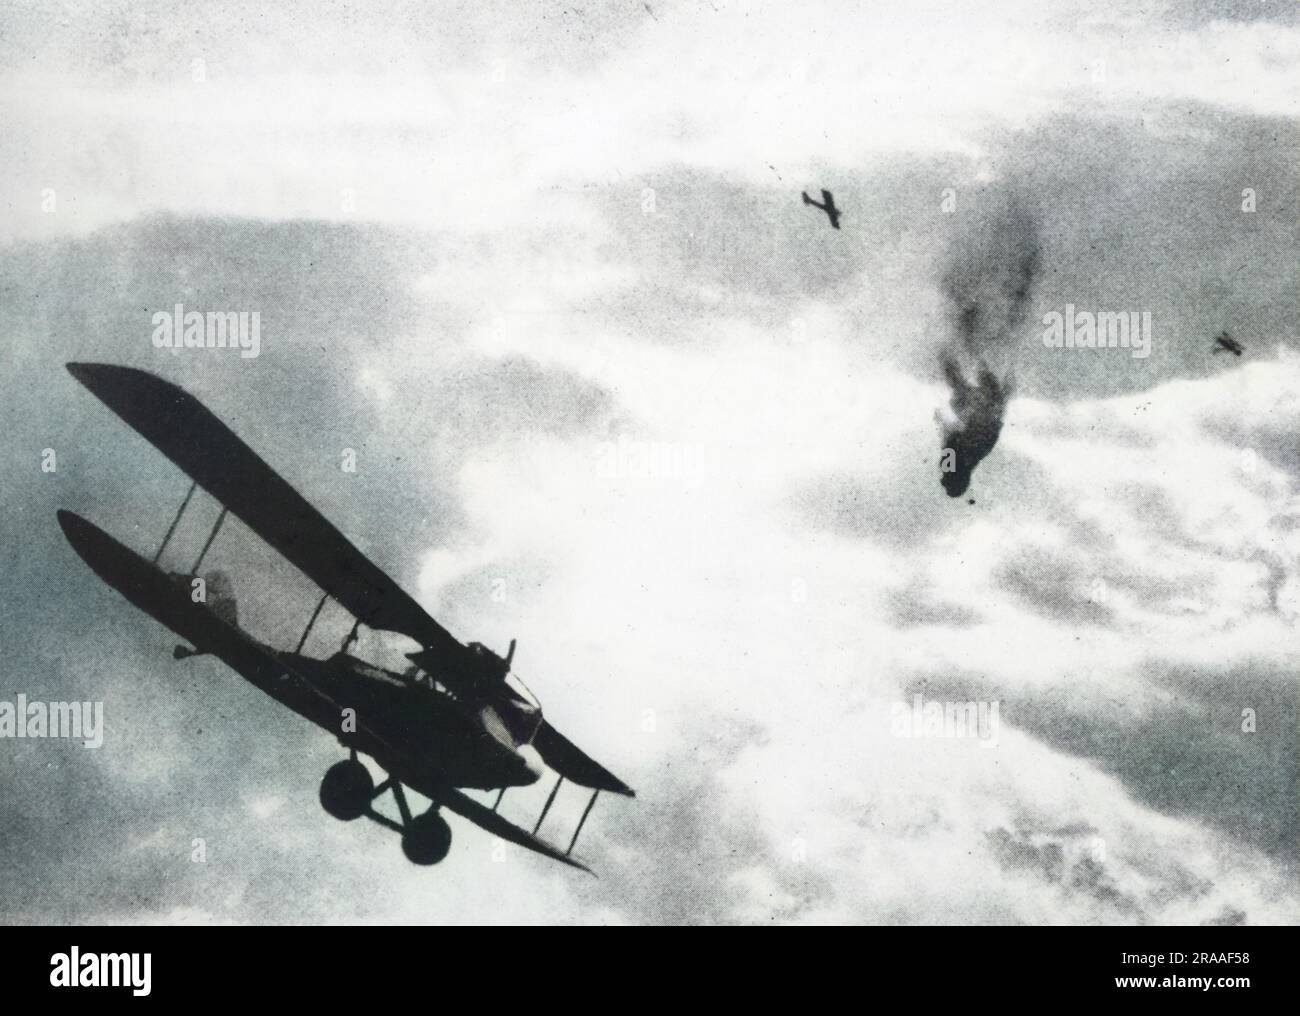 Un ballon français abattu par un avion allemand pendant la première Guerre mondiale. L'avion au premier plan est un Albatros C.V/17 (modèle 1917) avec les plans principaux inférieurs elliptiques (très probablement un montage avec l'Albatros ajouté plus tard). Date: 1917-1918 Banque D'Images